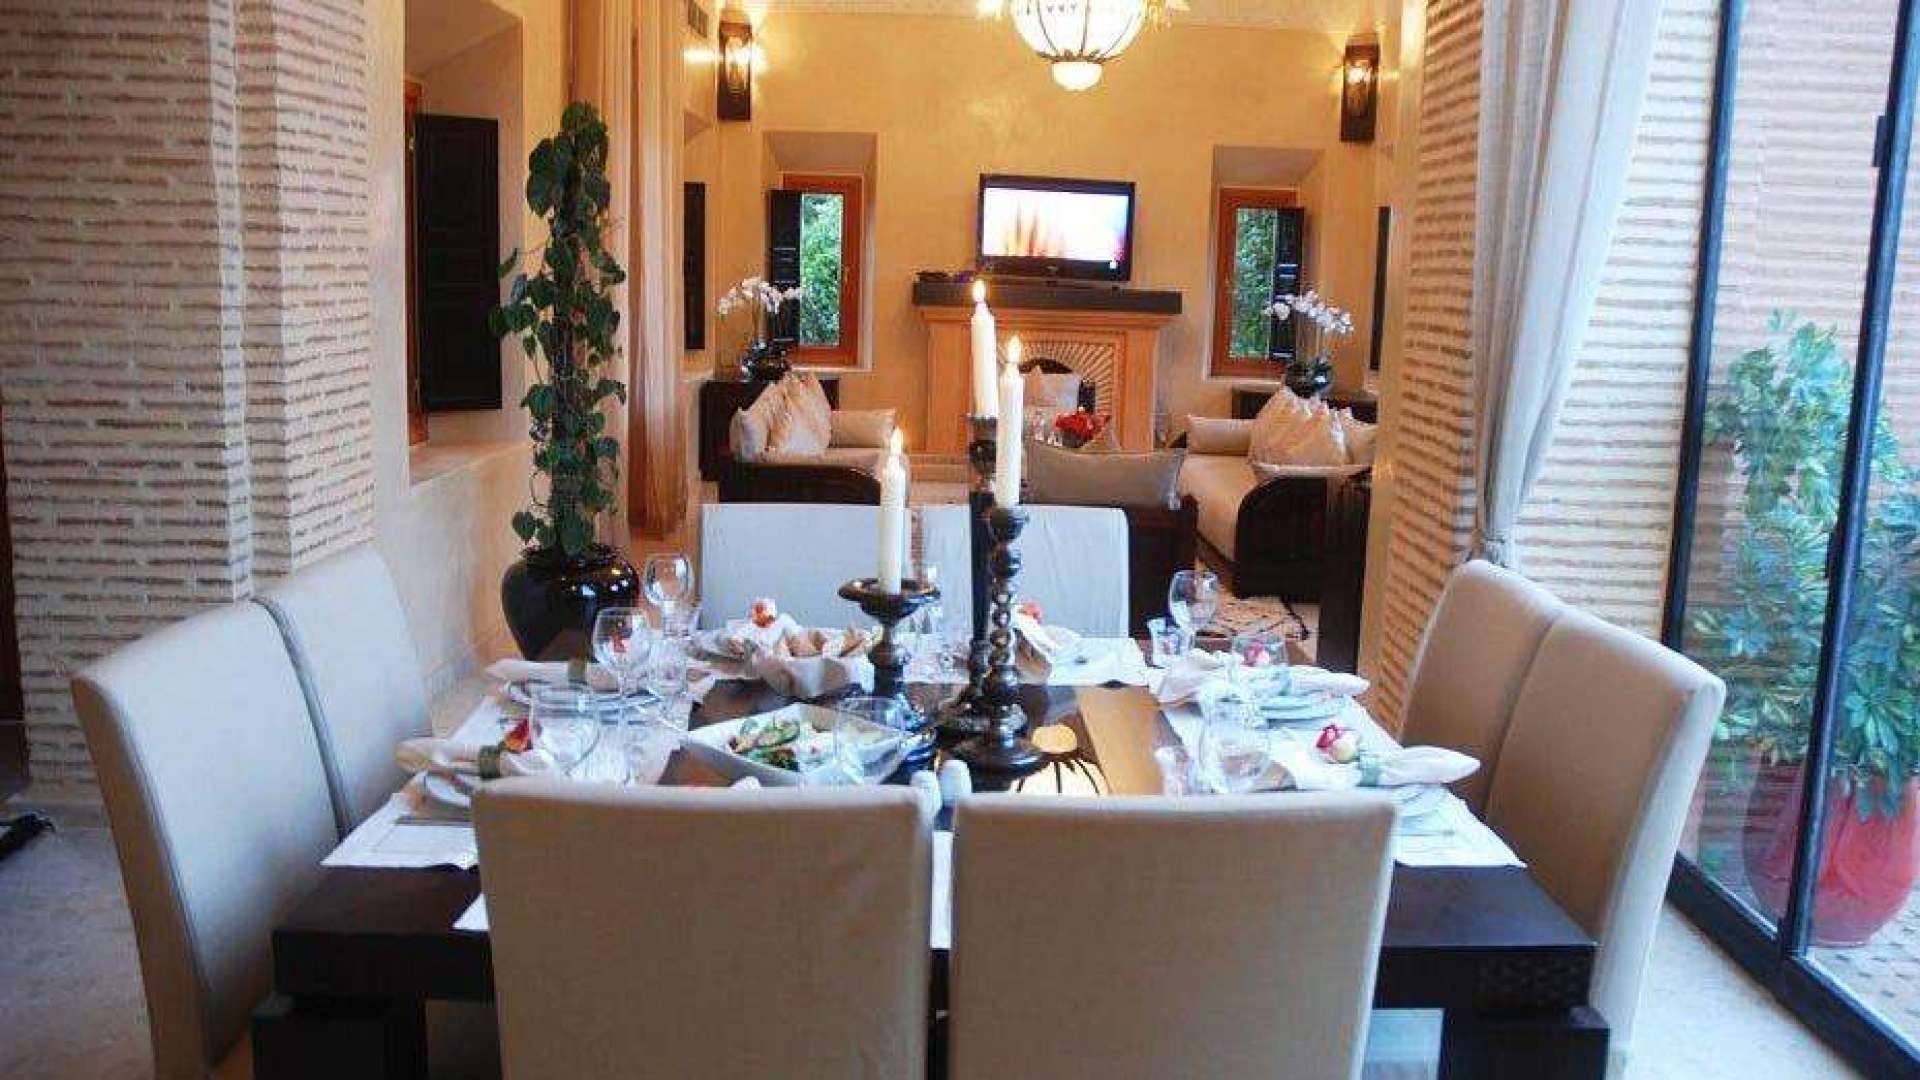 Location de vacances,Villa,Location à la semaine belle villa 4 suites dans le golf d'Amelkis ,Marrakech,Amelkis Golf Resort